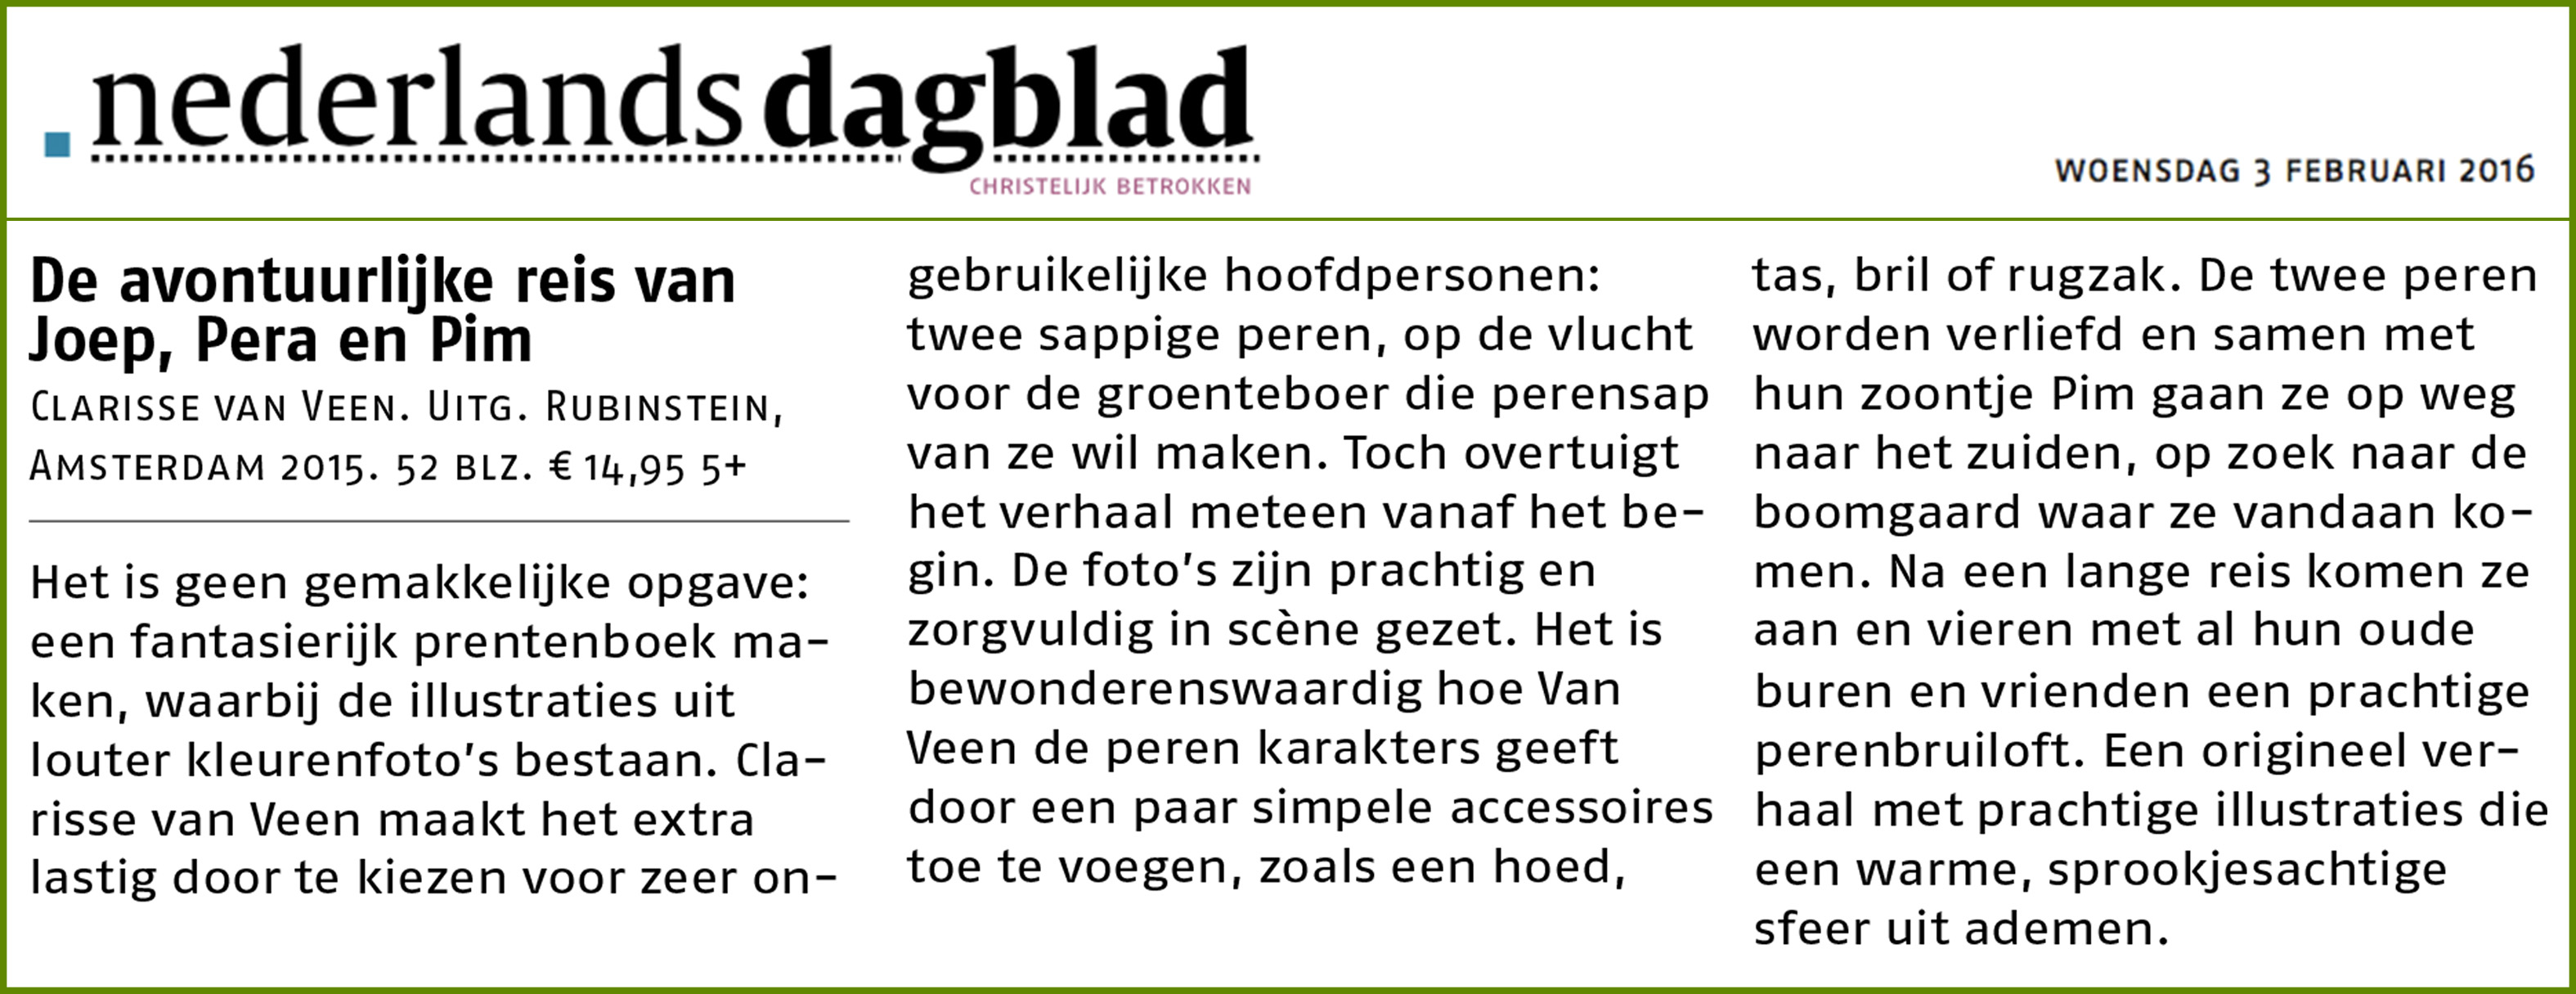 Recensie_nederlands_dagblad